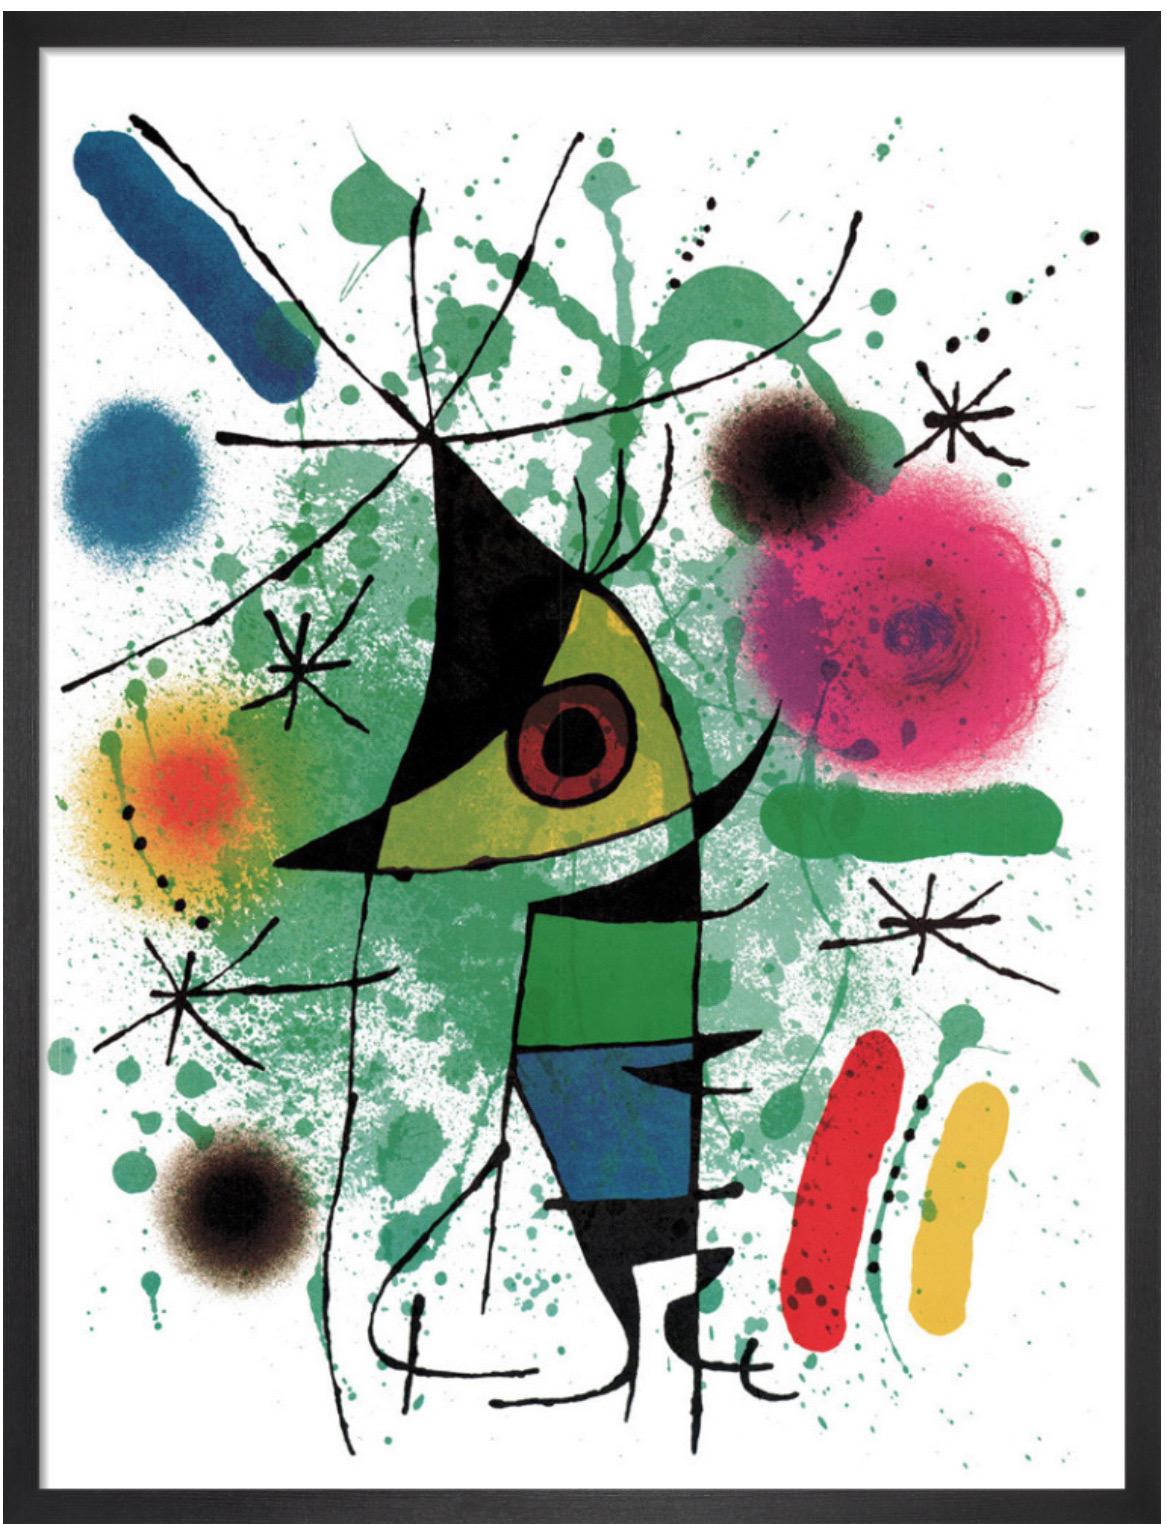 Joan Miró, Le poisson chanteur

Épreuve lithographique 

52 x 64 cm 

Cette lithographie est encadrée dans un cadre noir provenant de sources durables avec un glaçage acrylique de galerie. 

Le poisson chanteur" de Joan Miro représente un poisson